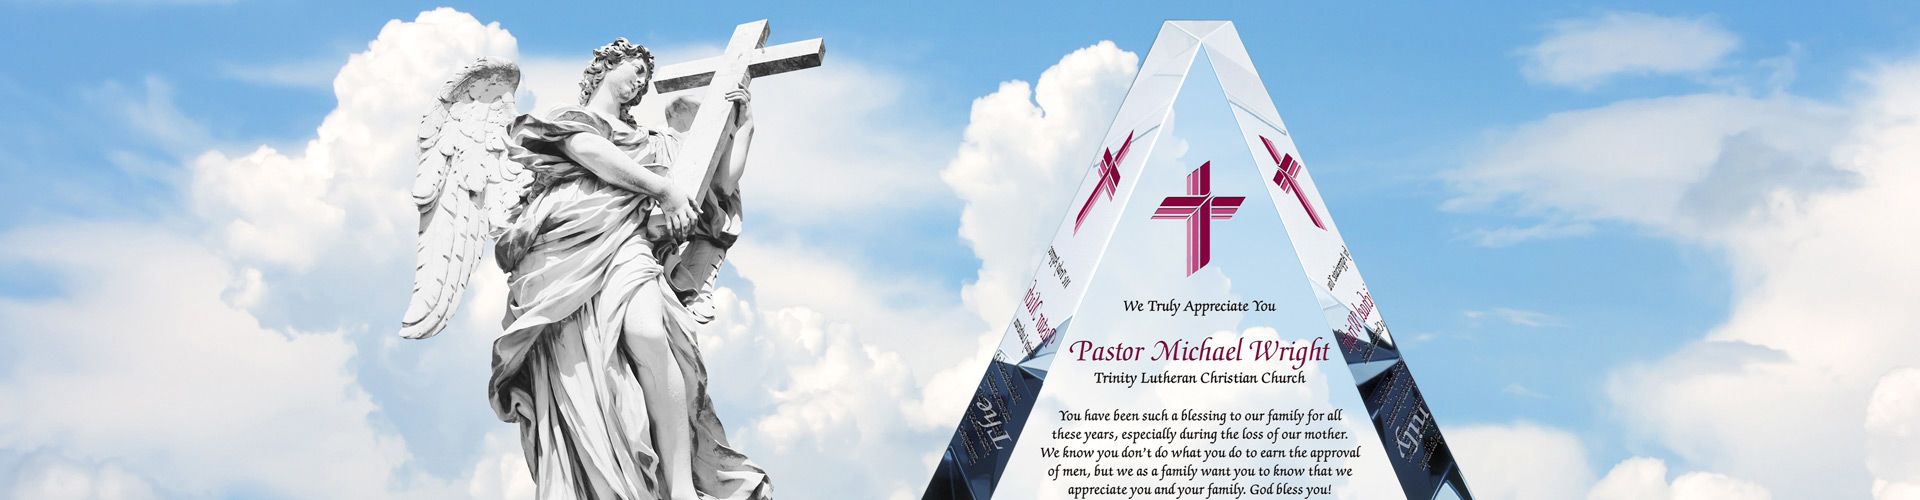 Custom Appreciation Award Plaques for Pastors - Banner 1